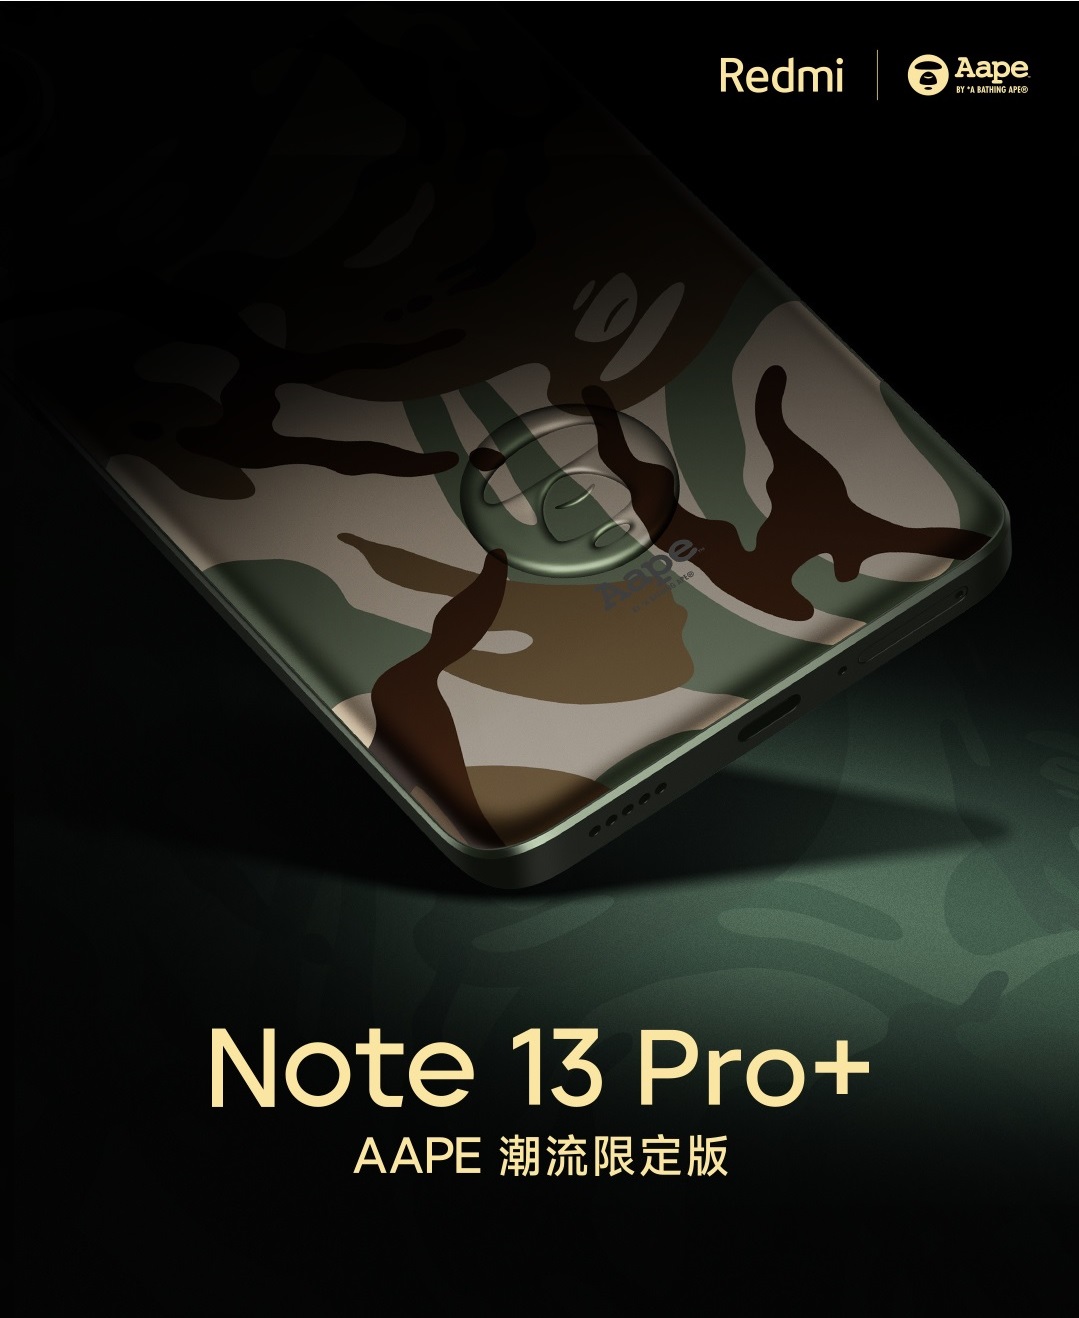 Redmi выпустит специальную версию Note 13 Pro+ в коллаборации с AAPE